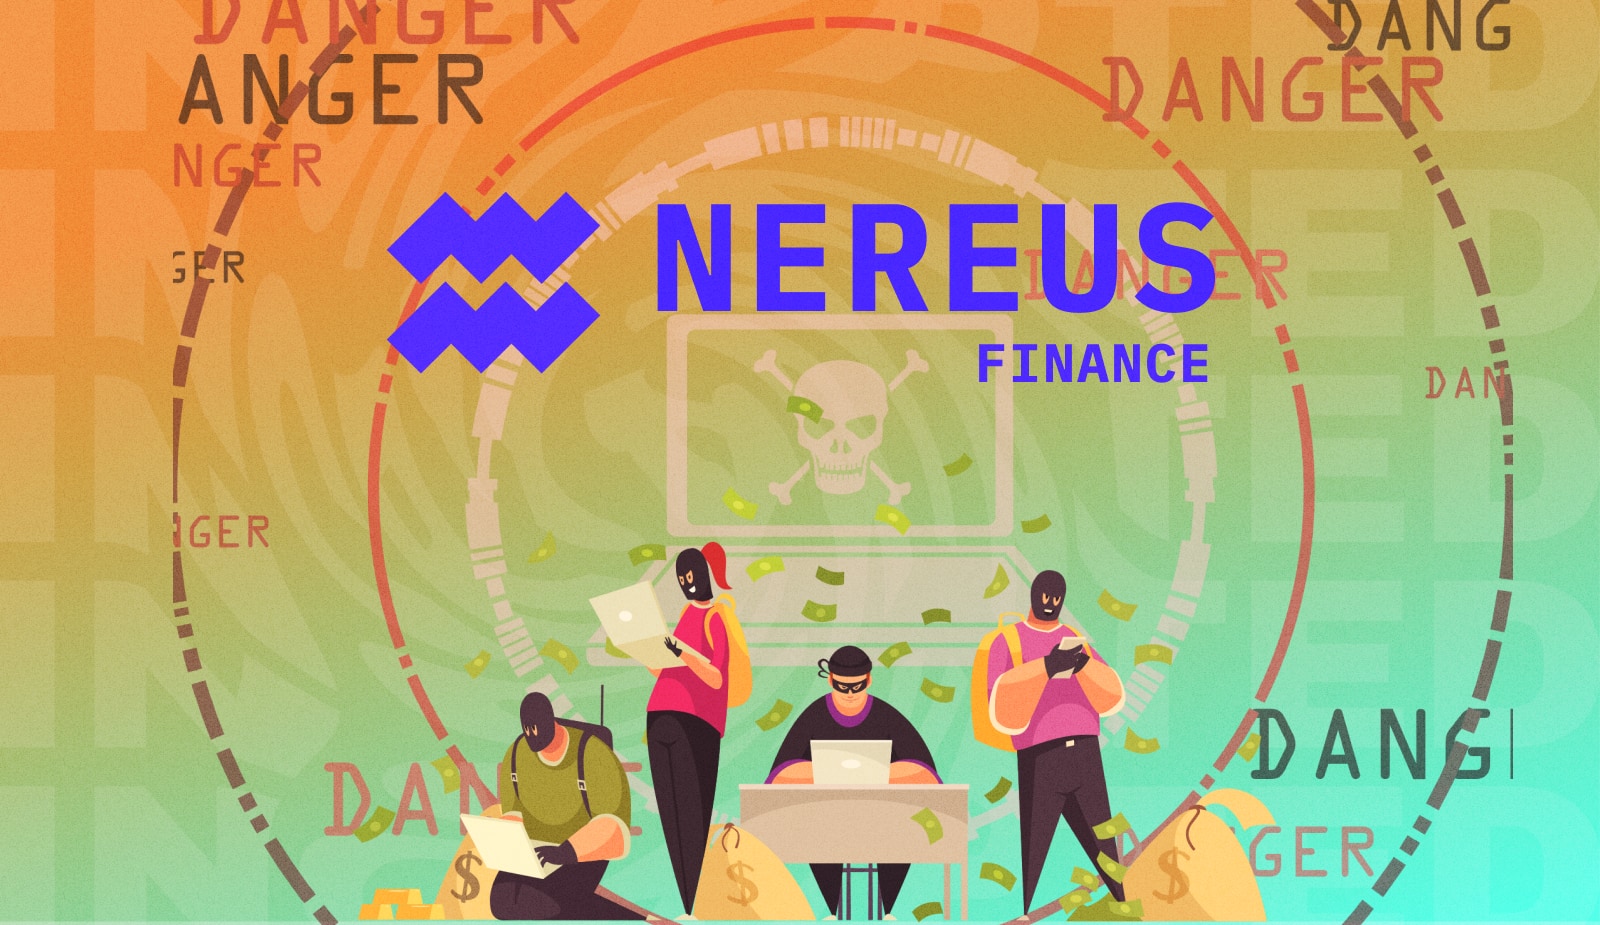 Протокол кредитования Nereus Finance попался на эксплойте и потерял $371 тыс. Заглавный коллаж новости.